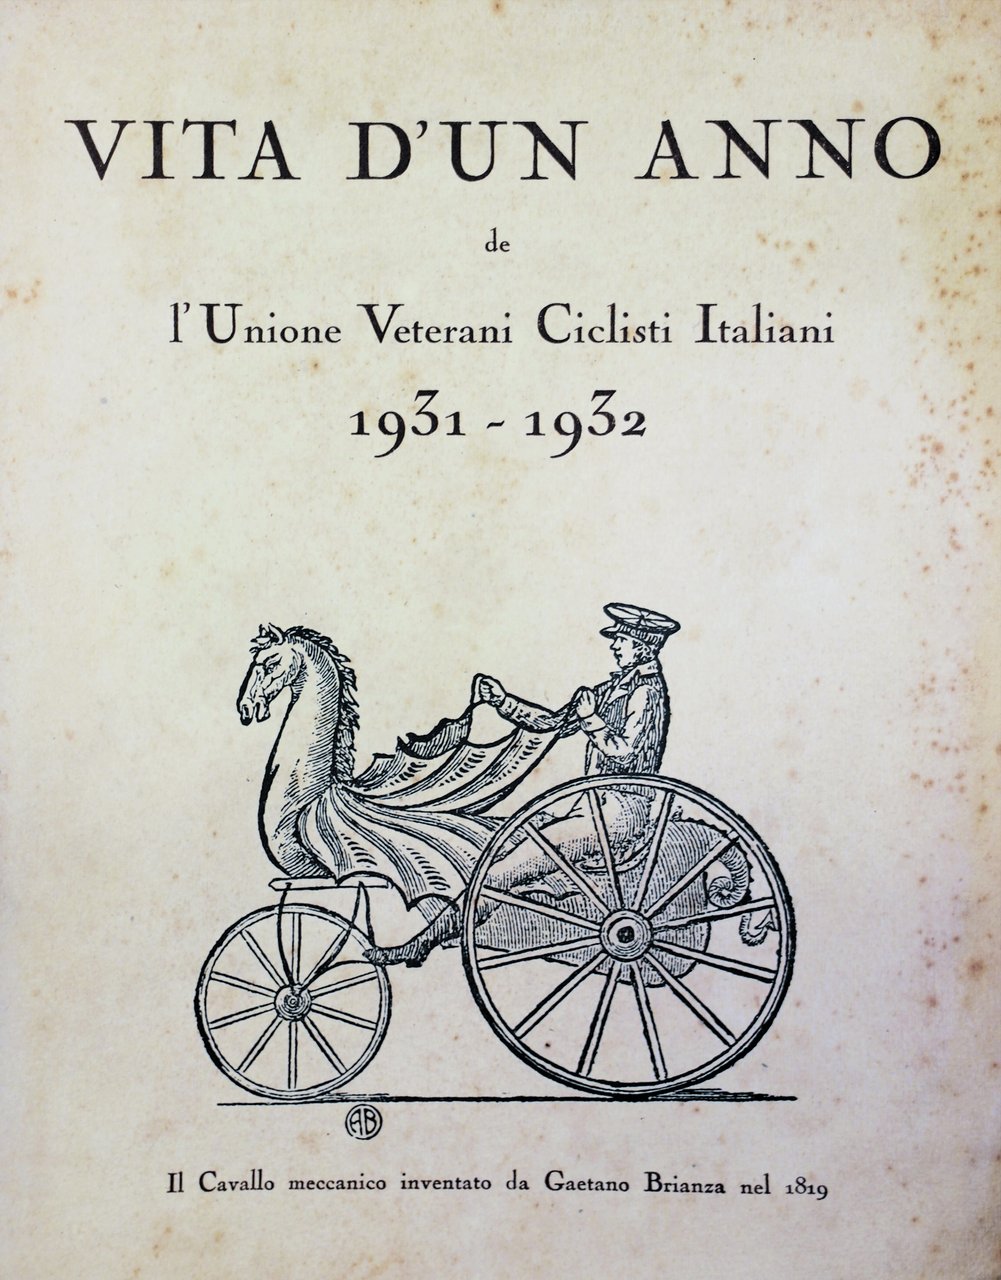 VITA D'UN ANNO DE L'"UNIONE VETERANI CICLISTI ITALIANI". 1931-1932.